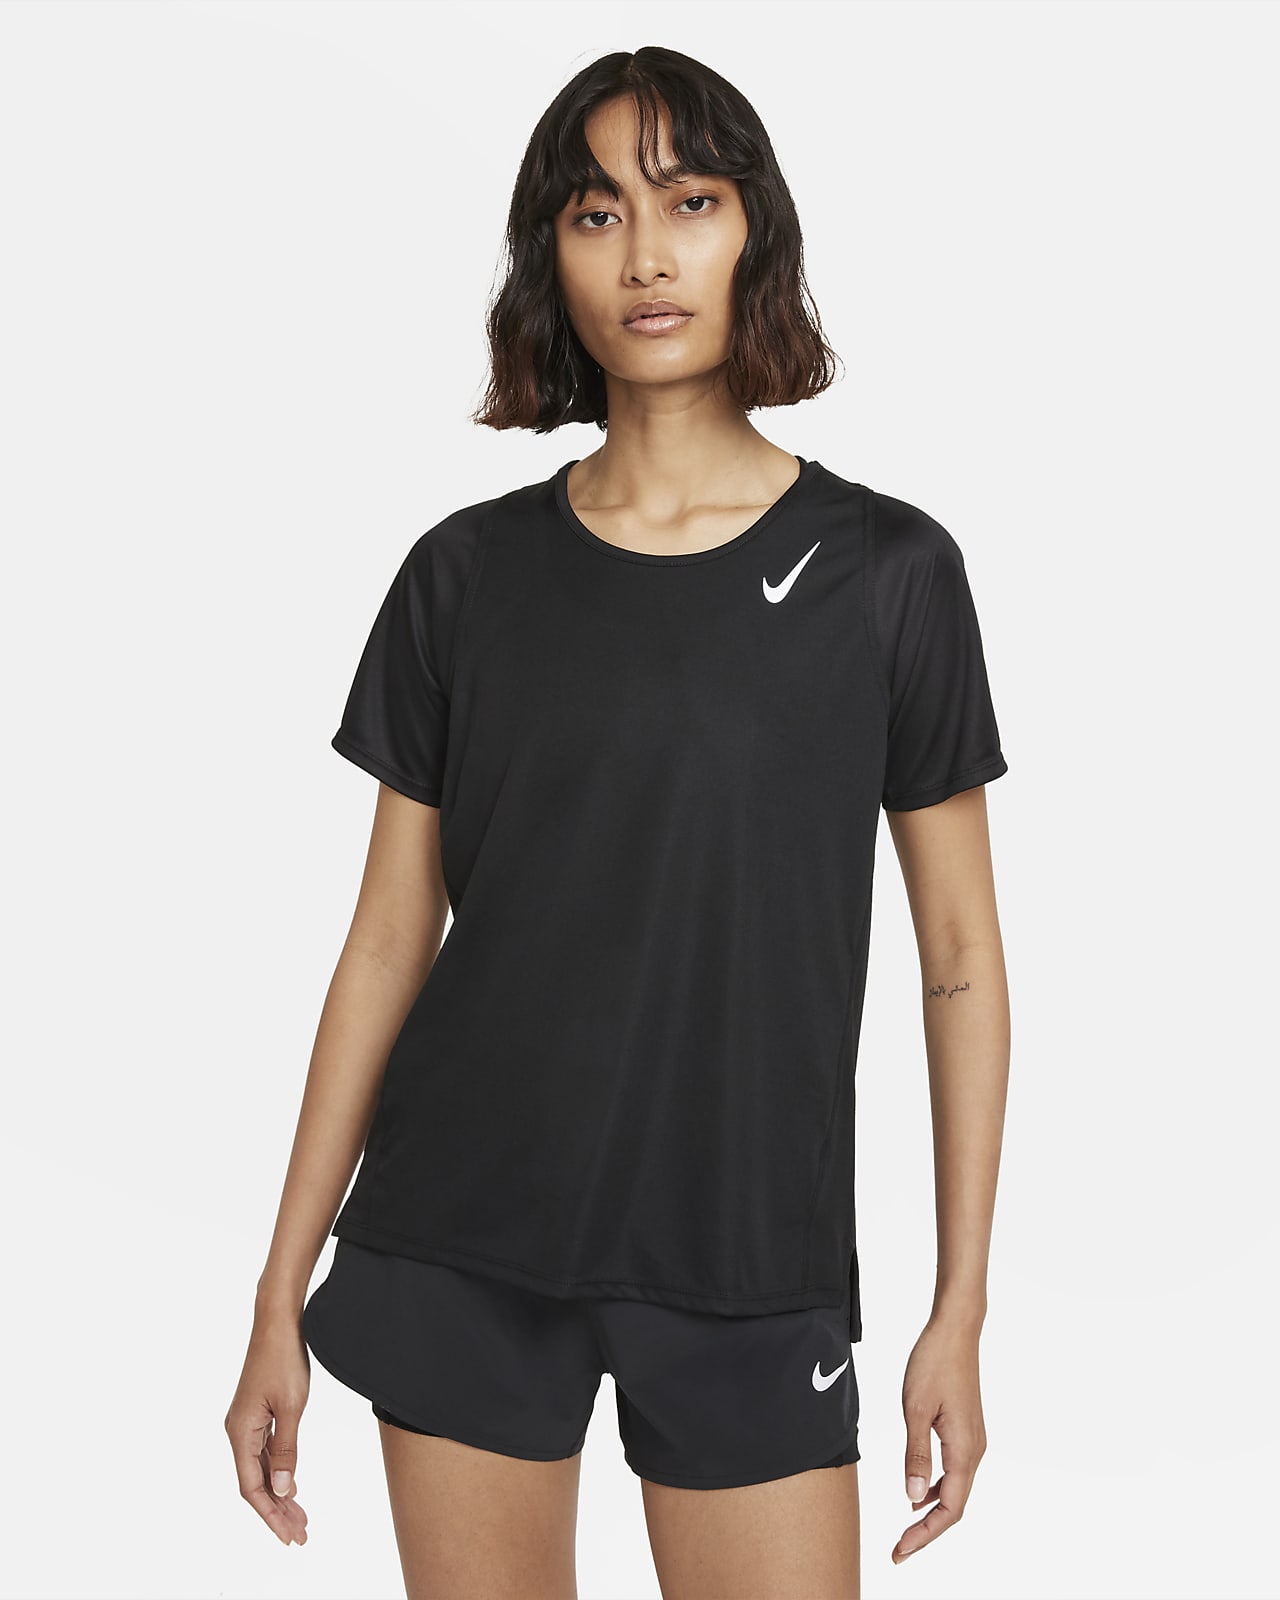 Γυναικεία κοντομάνικη μπλούζα για τρέξιμο Nike Dri-FIT Race